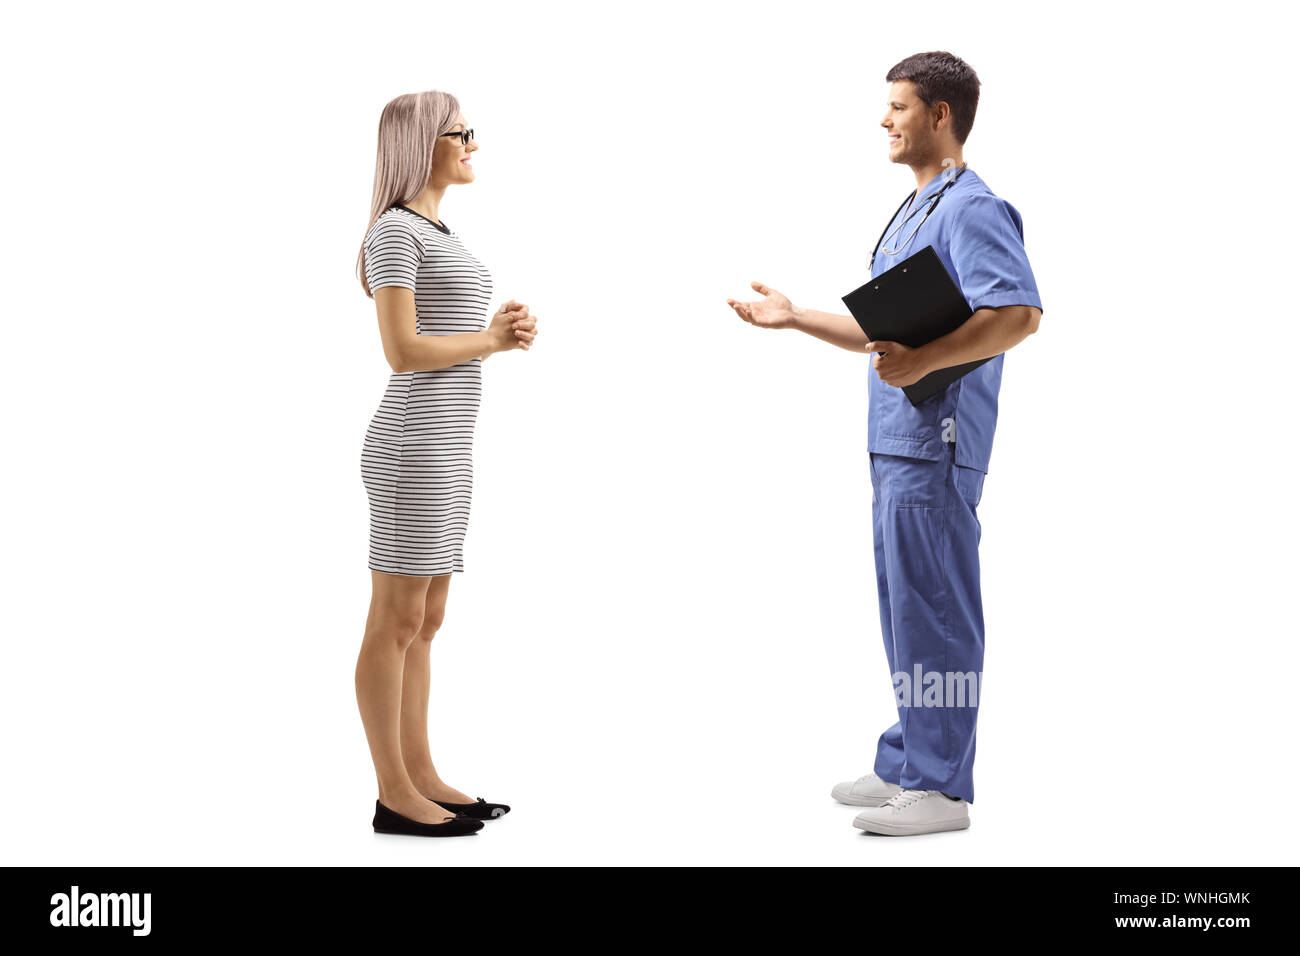 Profil de pleine longueur de balle un jeune médecin homme dans un uniforme bleu de parler à une jeune femme isolée sur fond blanc Banque D'Images